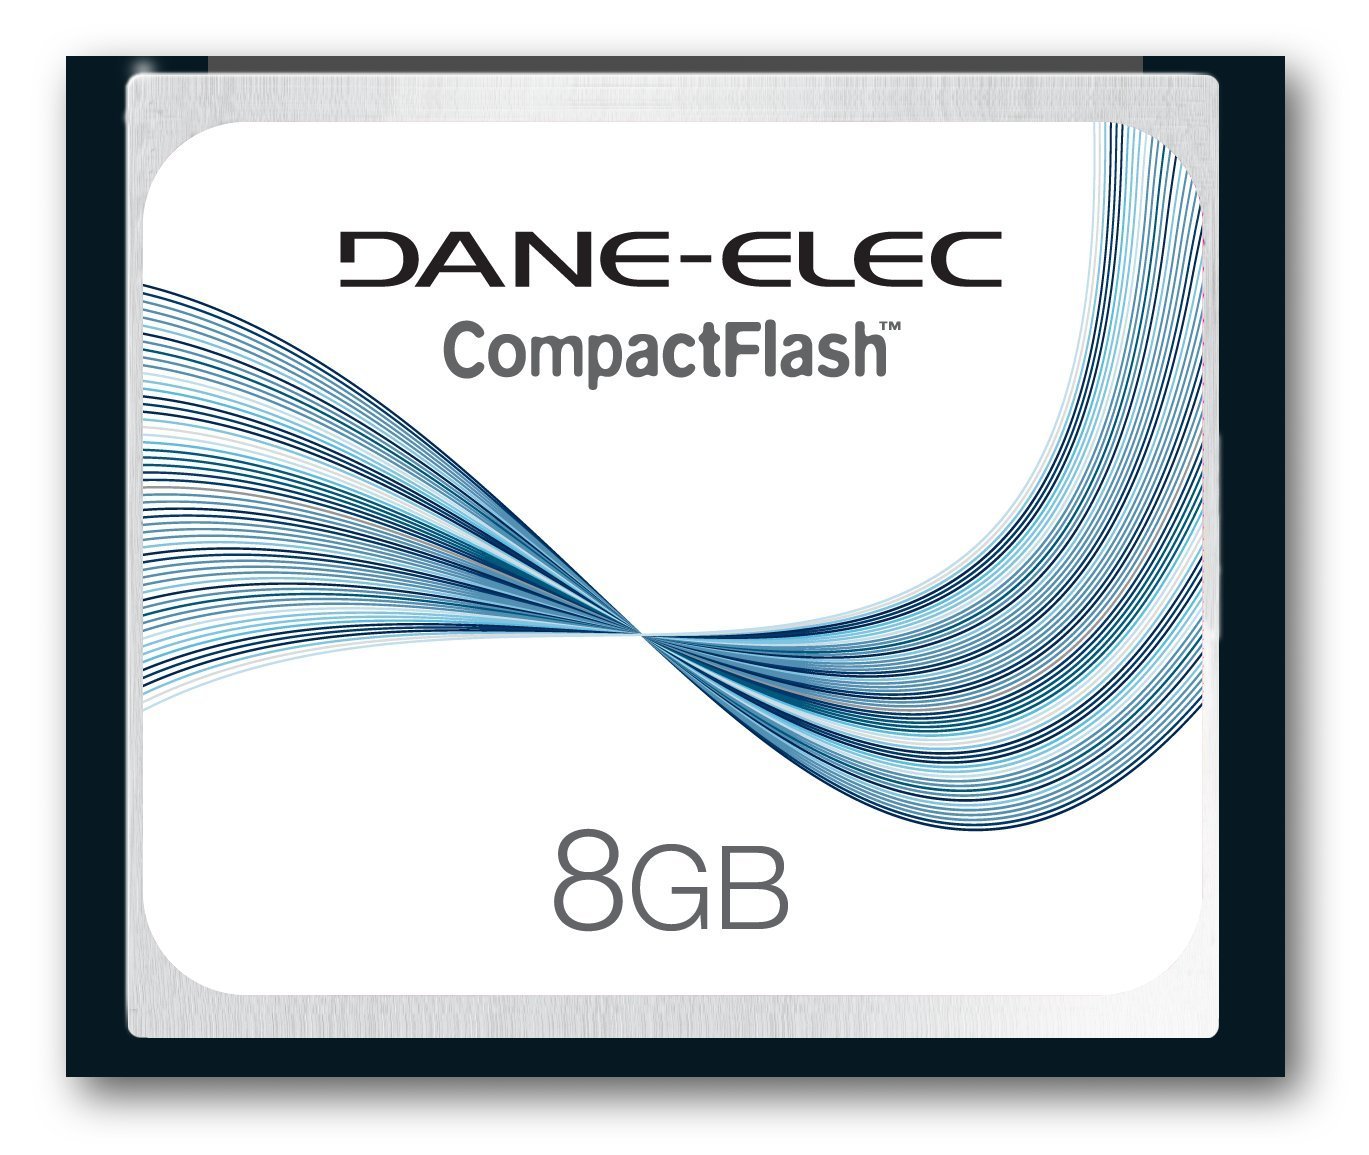 MEMORIA DANE-ELEC 8GB COMPACT FLASH CARD, DA-CF-8192-R --COMPATIBLE CON AMBOS MAC Y SISTEMAS PC--